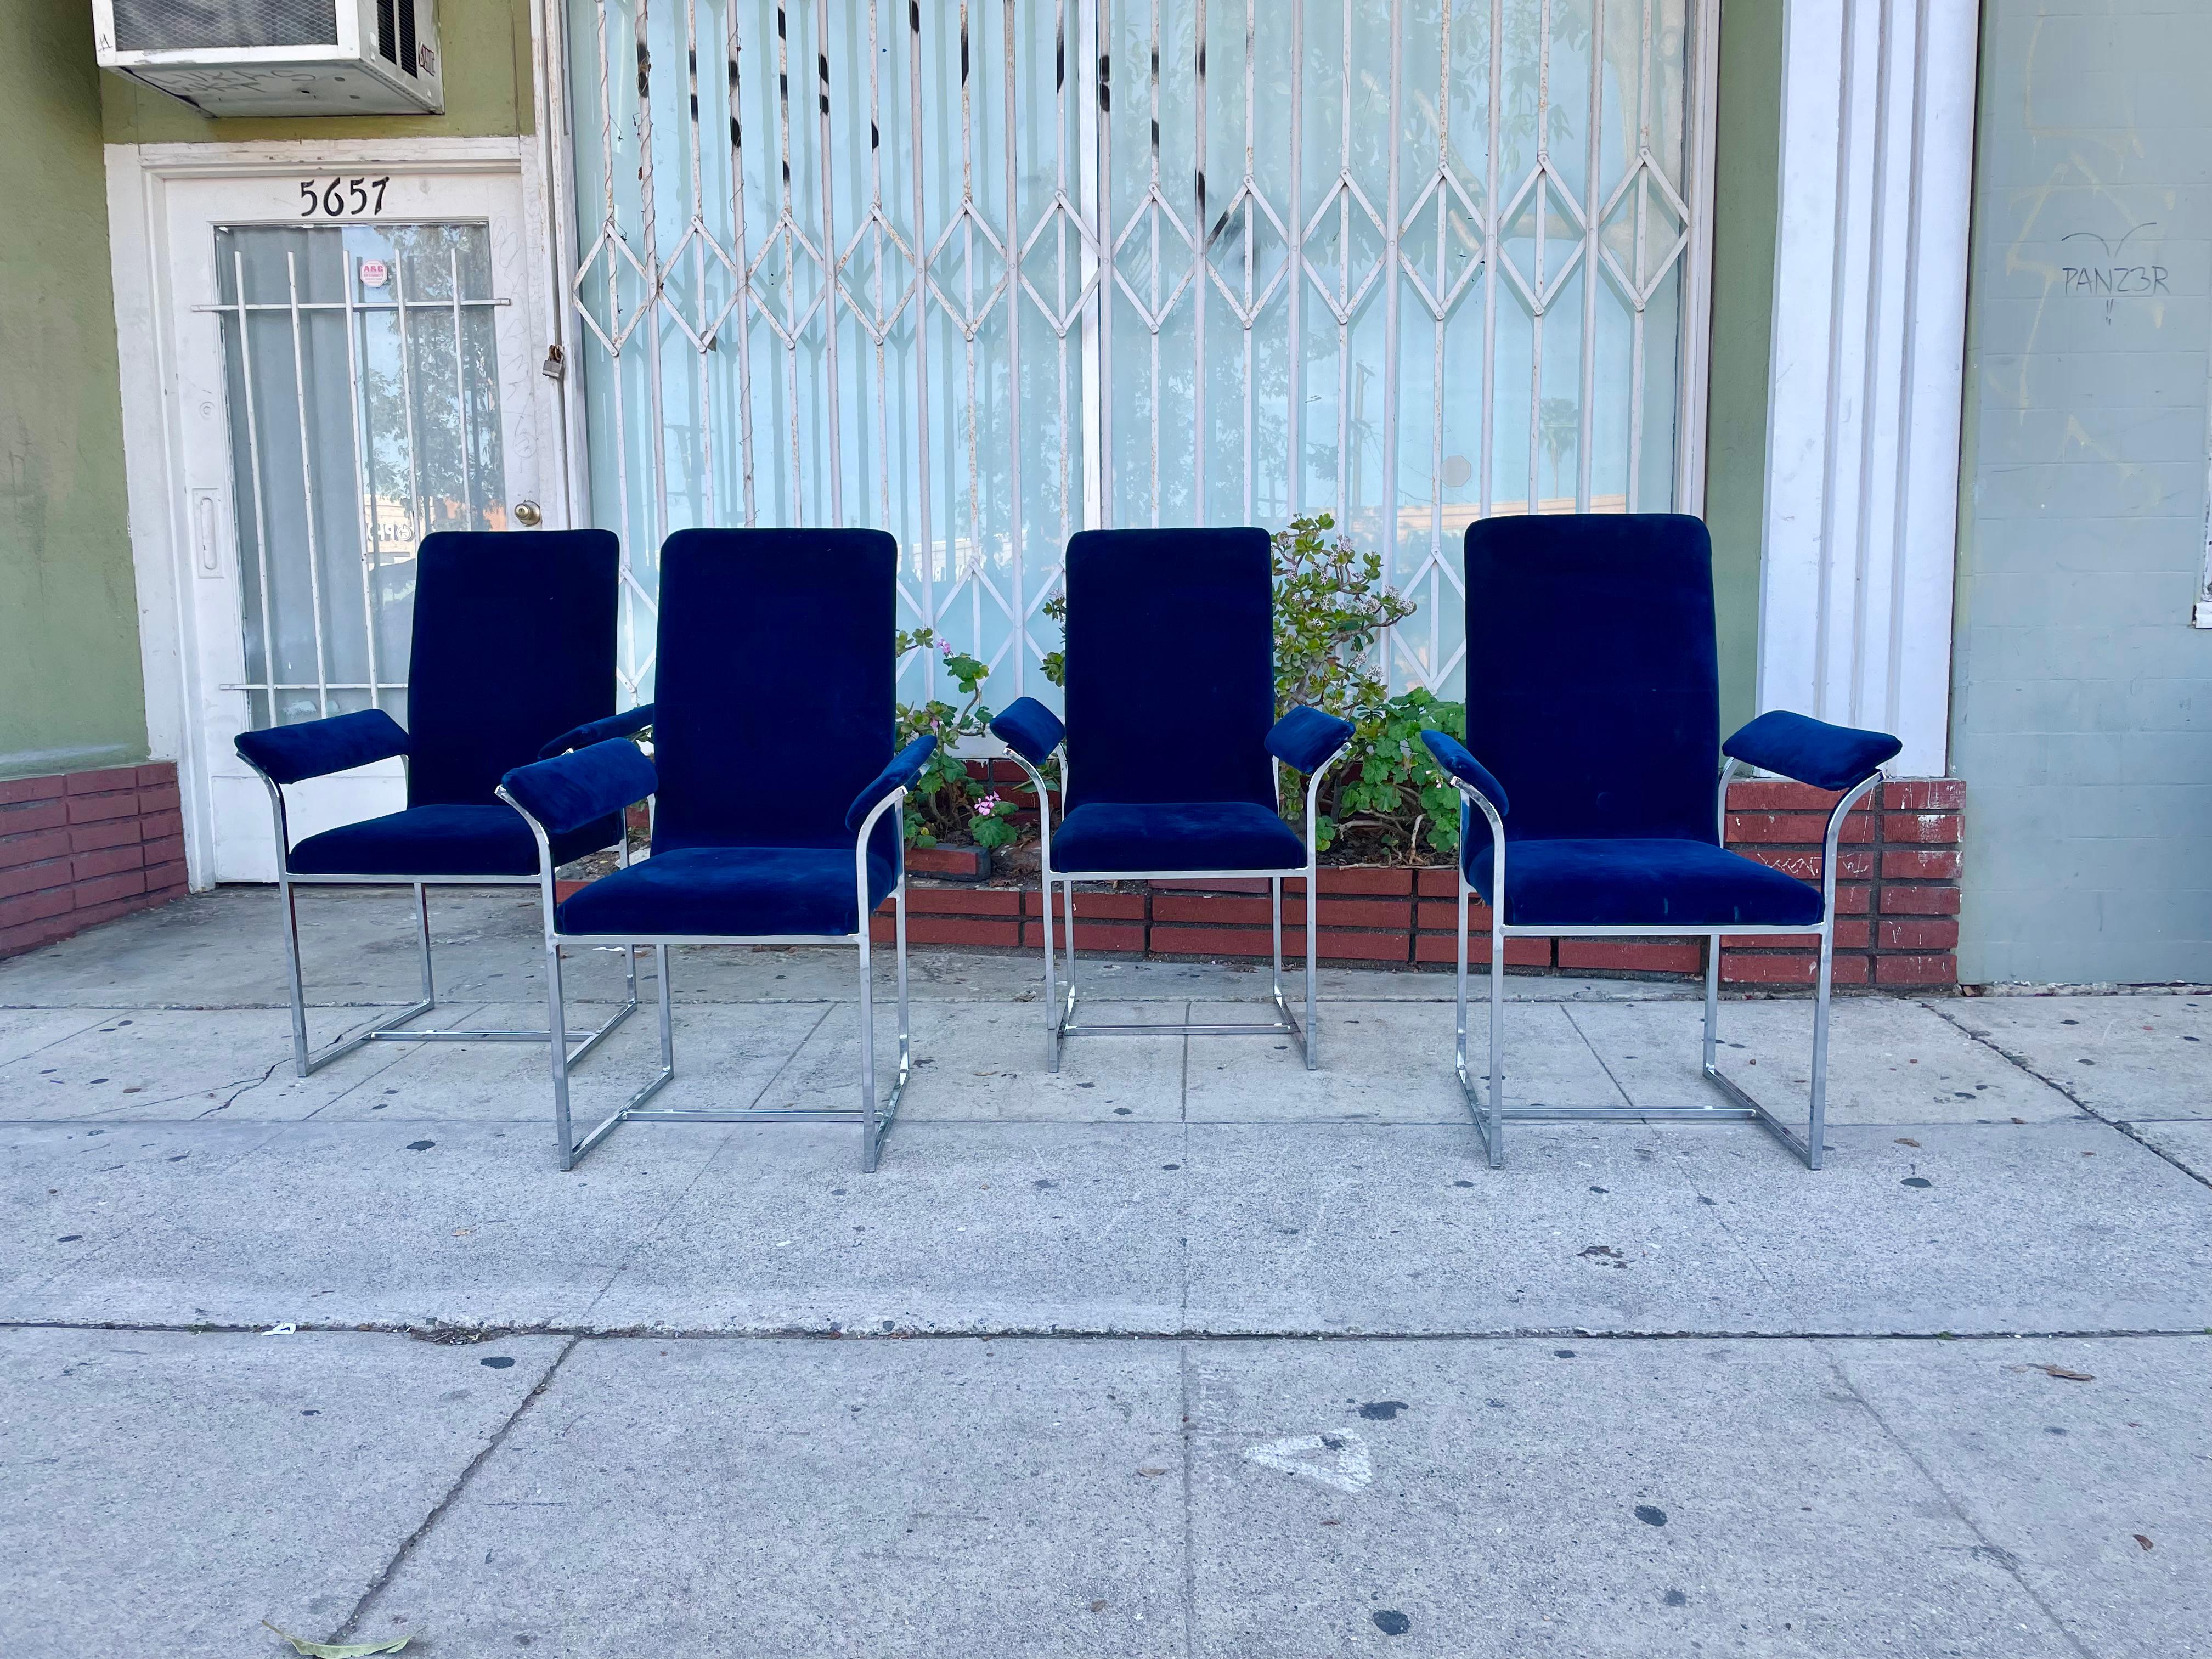 Vier verchromte Esszimmerstühle im Stil von Milo Baughman. Jeder Stuhl hat ein verchromtes Gestell mit einer einzigartigen skulpturalen Armlehne und ist mit blauem Samt gepolstert, was ihn zu einem Unikat macht.